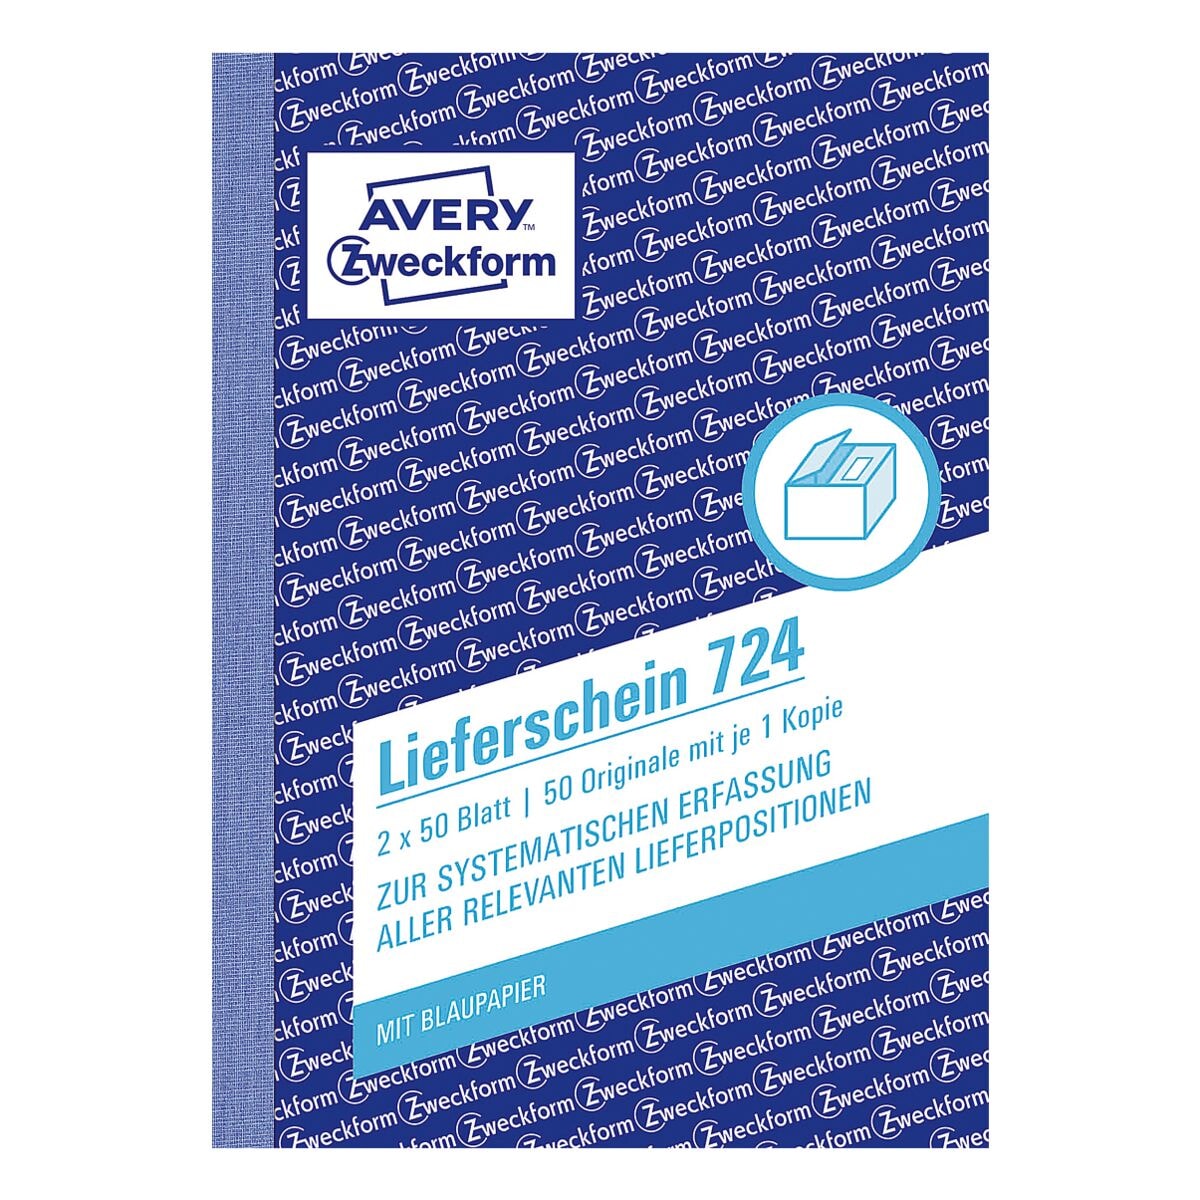 Avery Zweckform Lieferschein 724